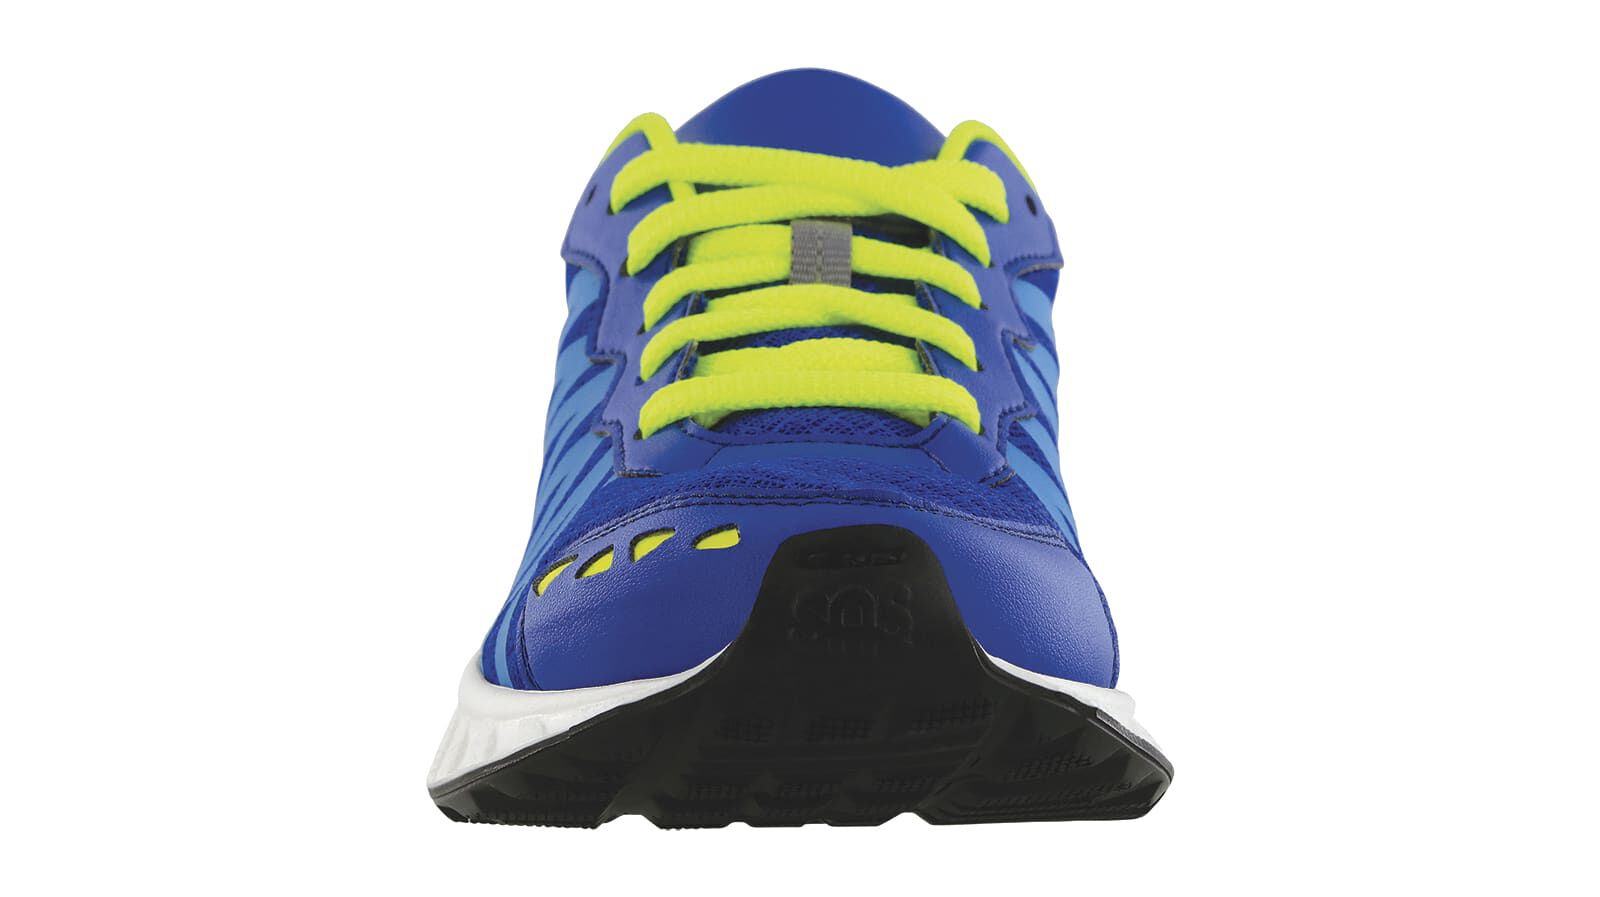 Buy Centrino Men's Blue Sneaker-6 (3323-22) at Amazon.in